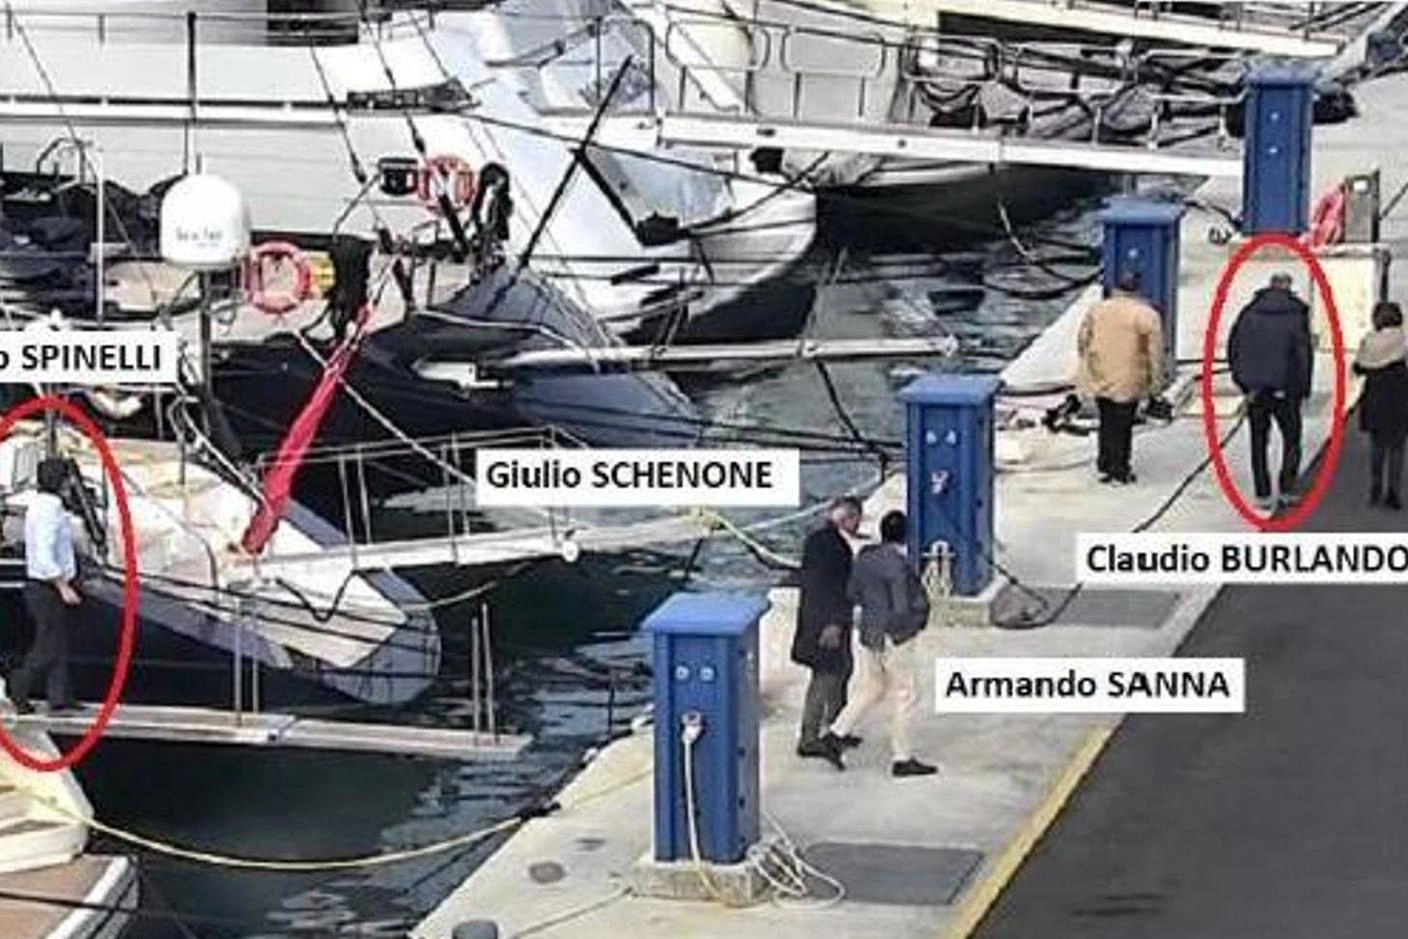 Le foto dell'incontro sullo yacht di Spinelli